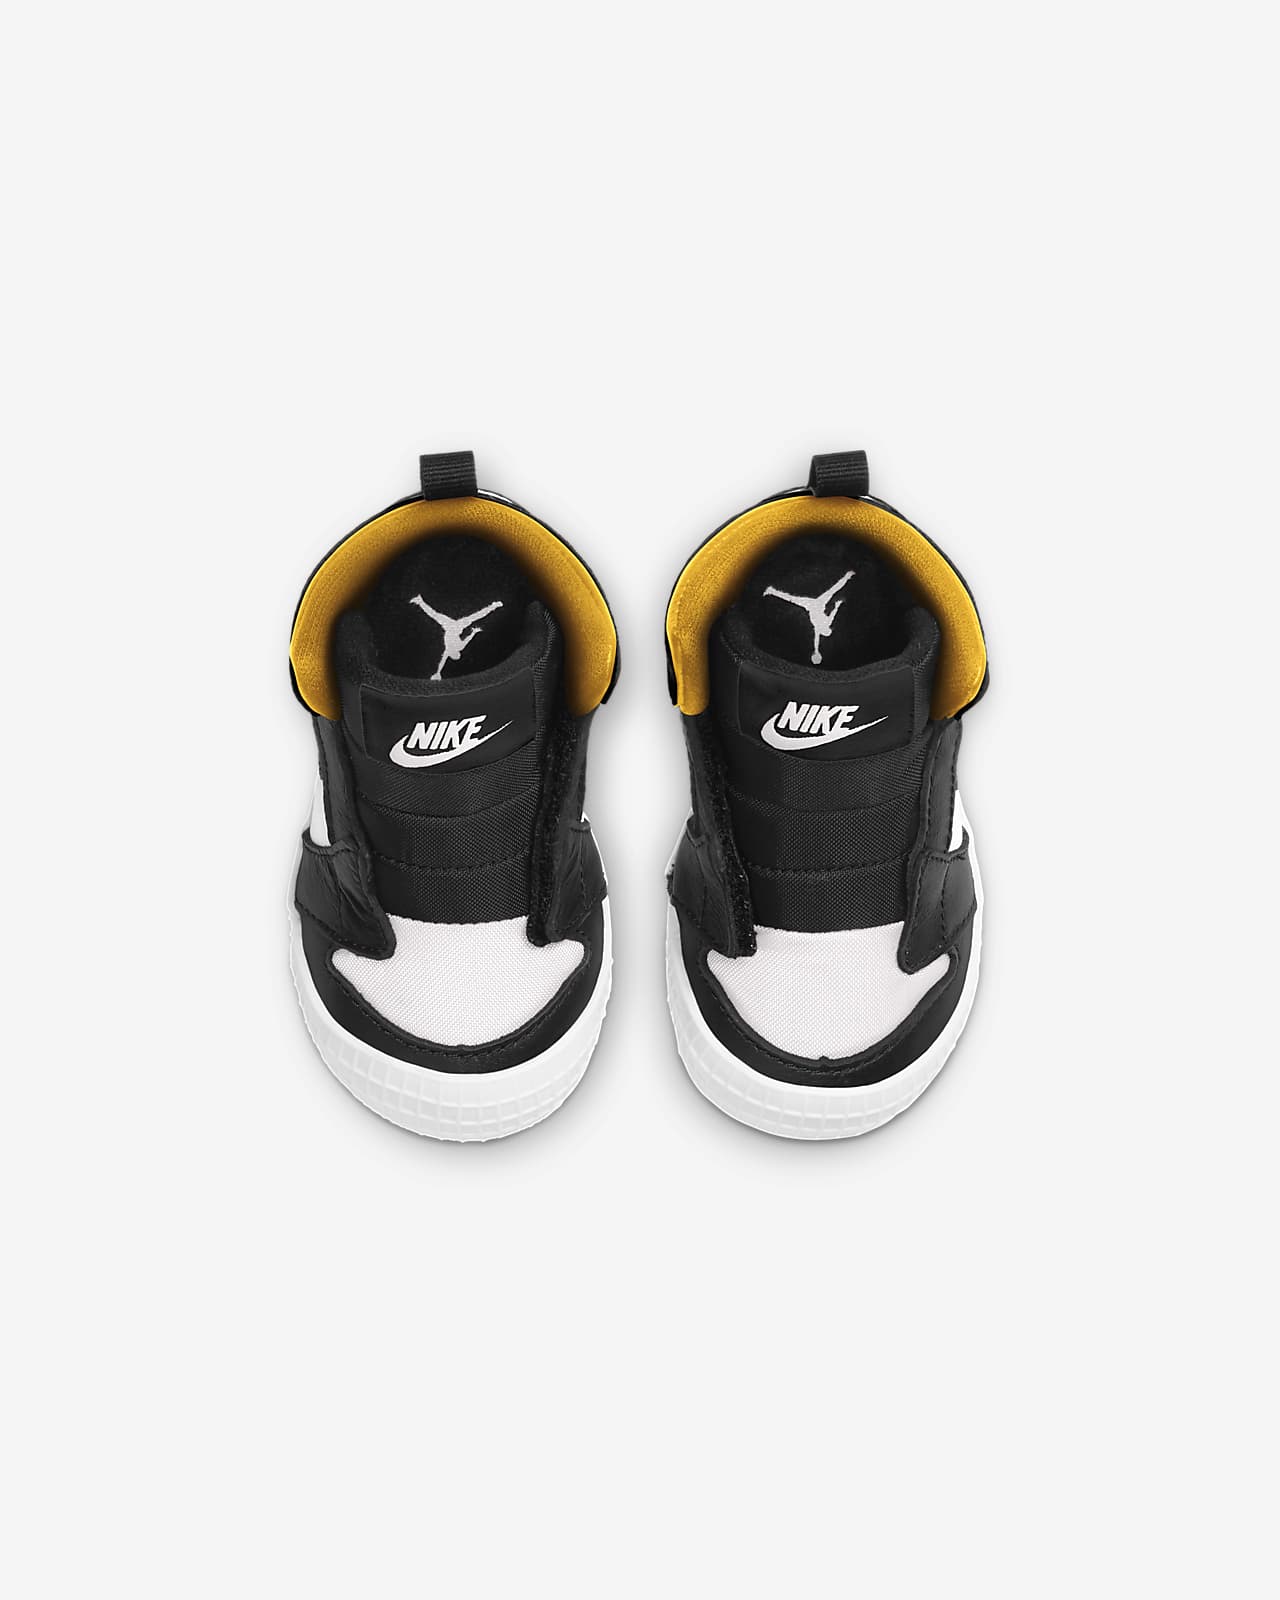 Chausson Jordan 1 pour Bébé. Nike FR